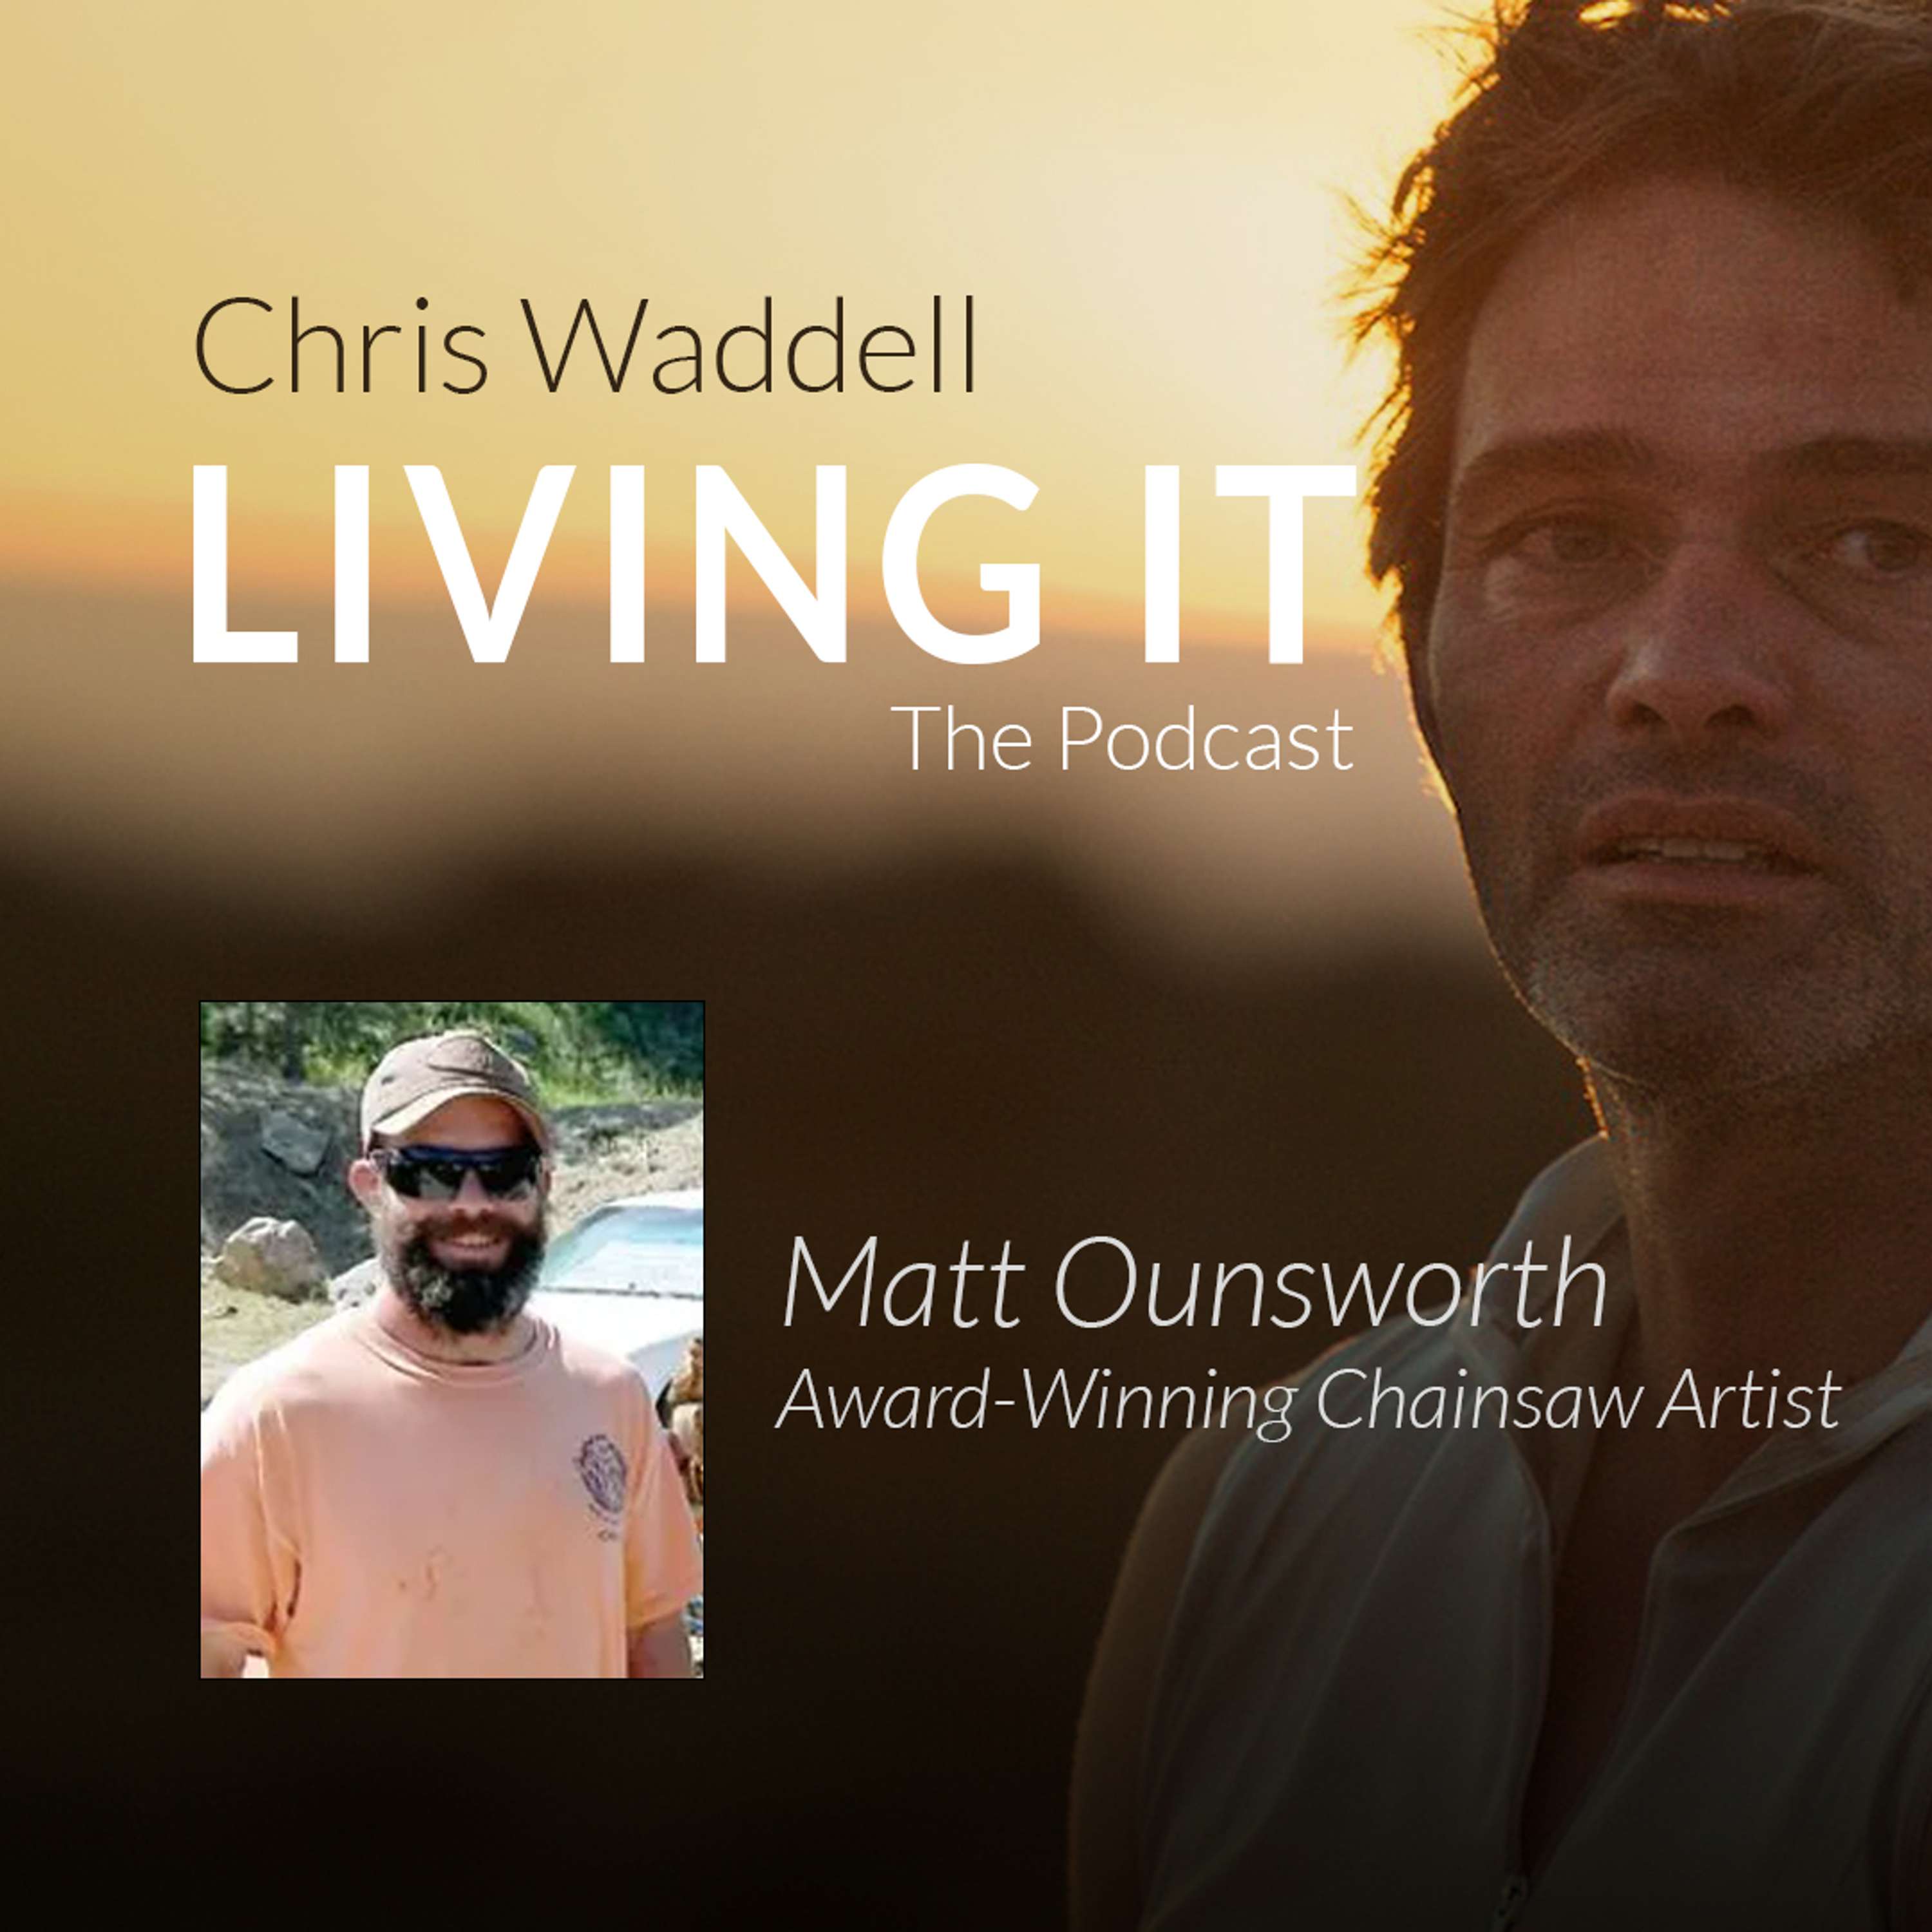 Matt Ounsworth - Award-Winning Chainsaw Artist!